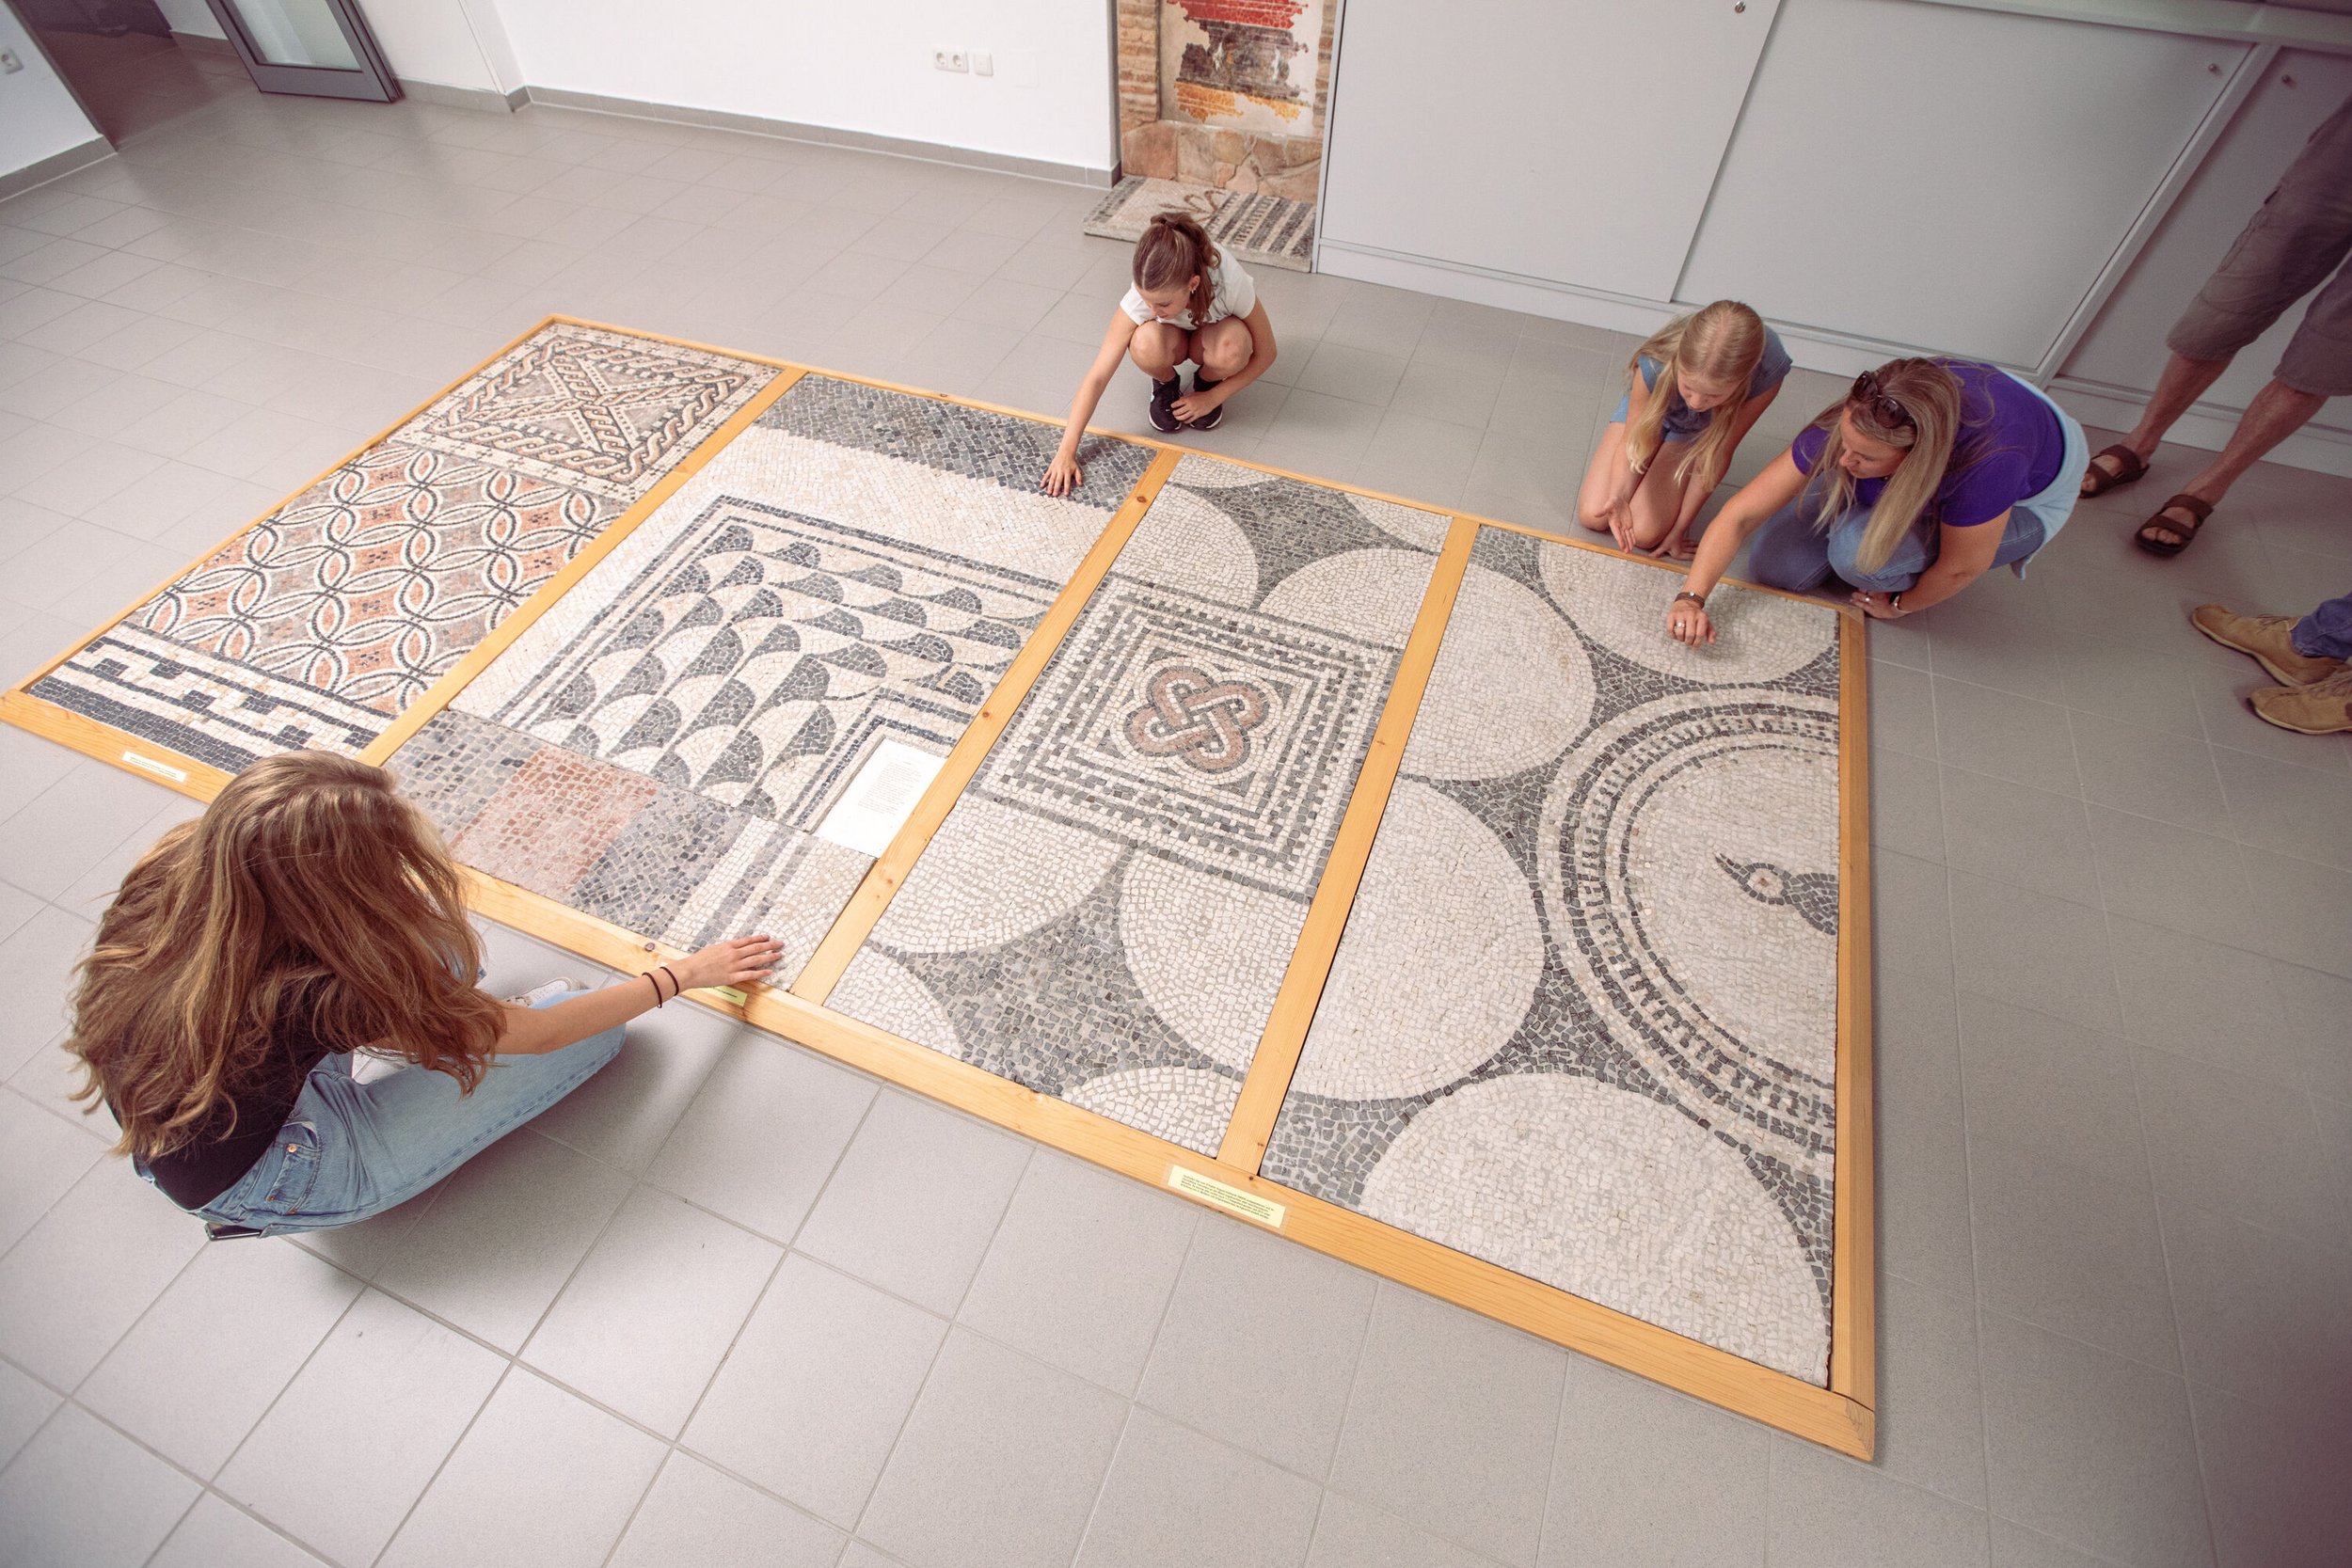 Blick auf einen filigranen Mosaikboden aus der Römerzeit, Frau und drei Mädchen sitzen rund herum